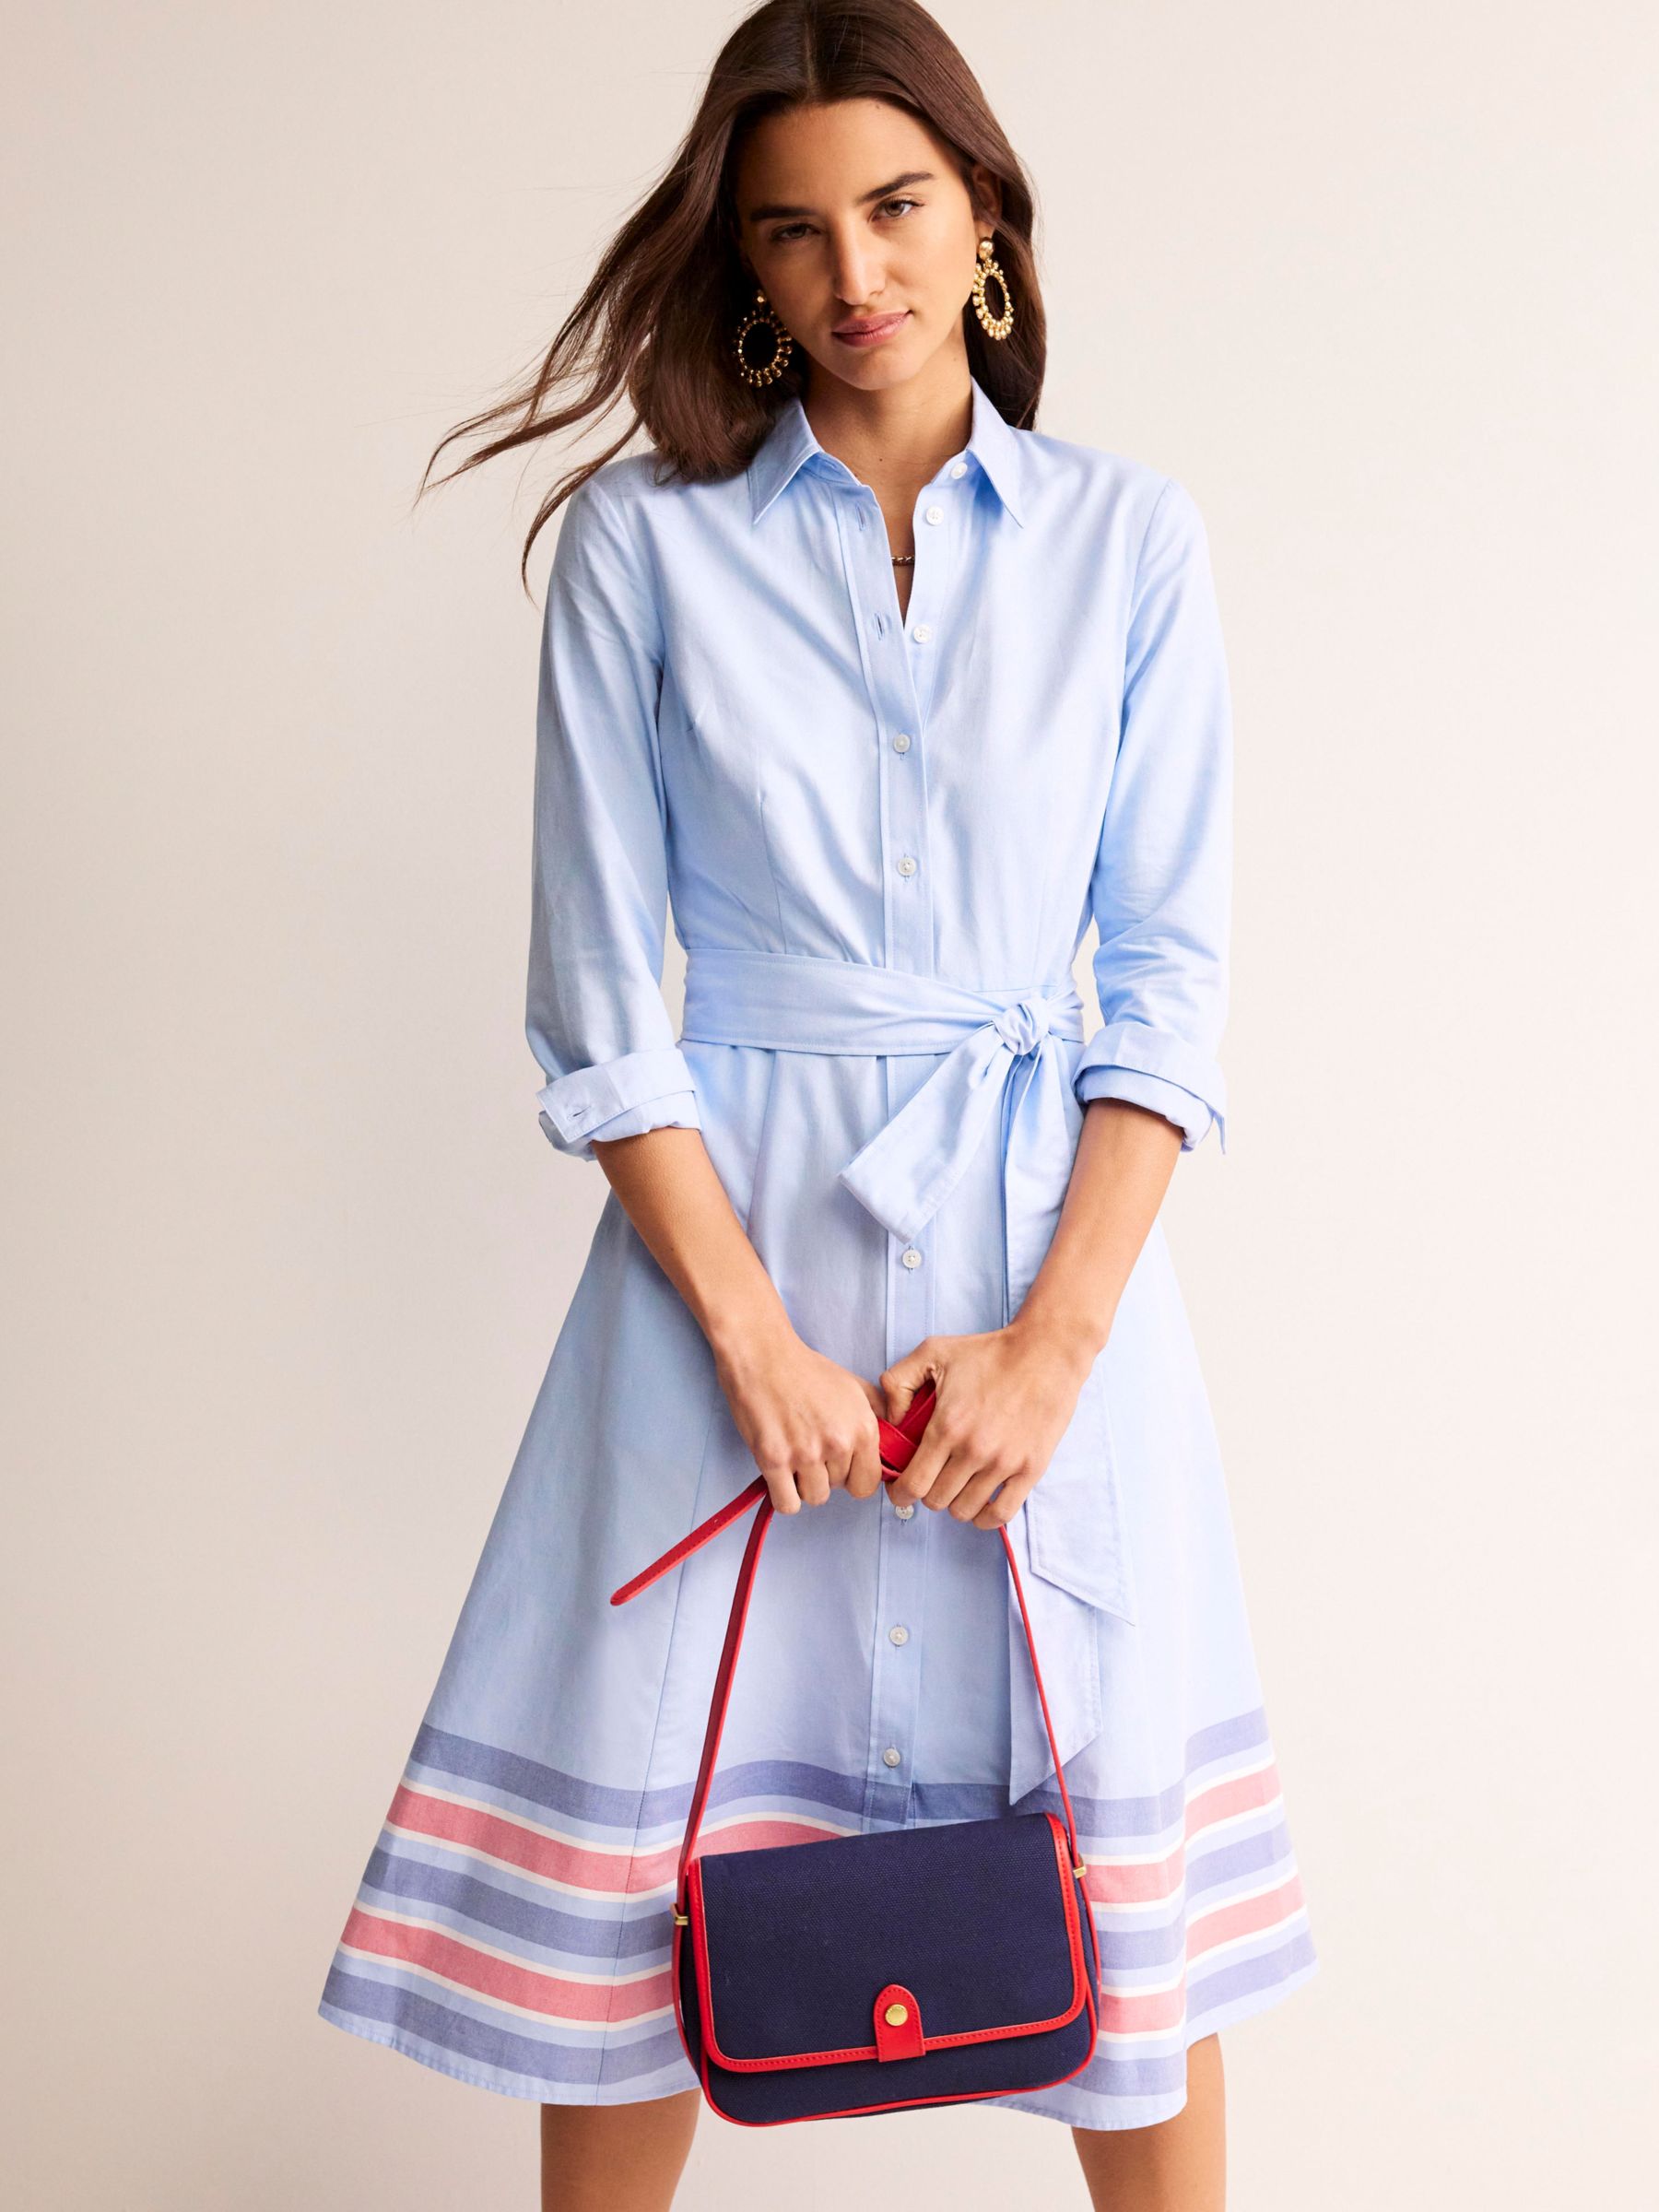 Cotton, Under Dress Biker Shorts, More Colors – Striped Box Boutique